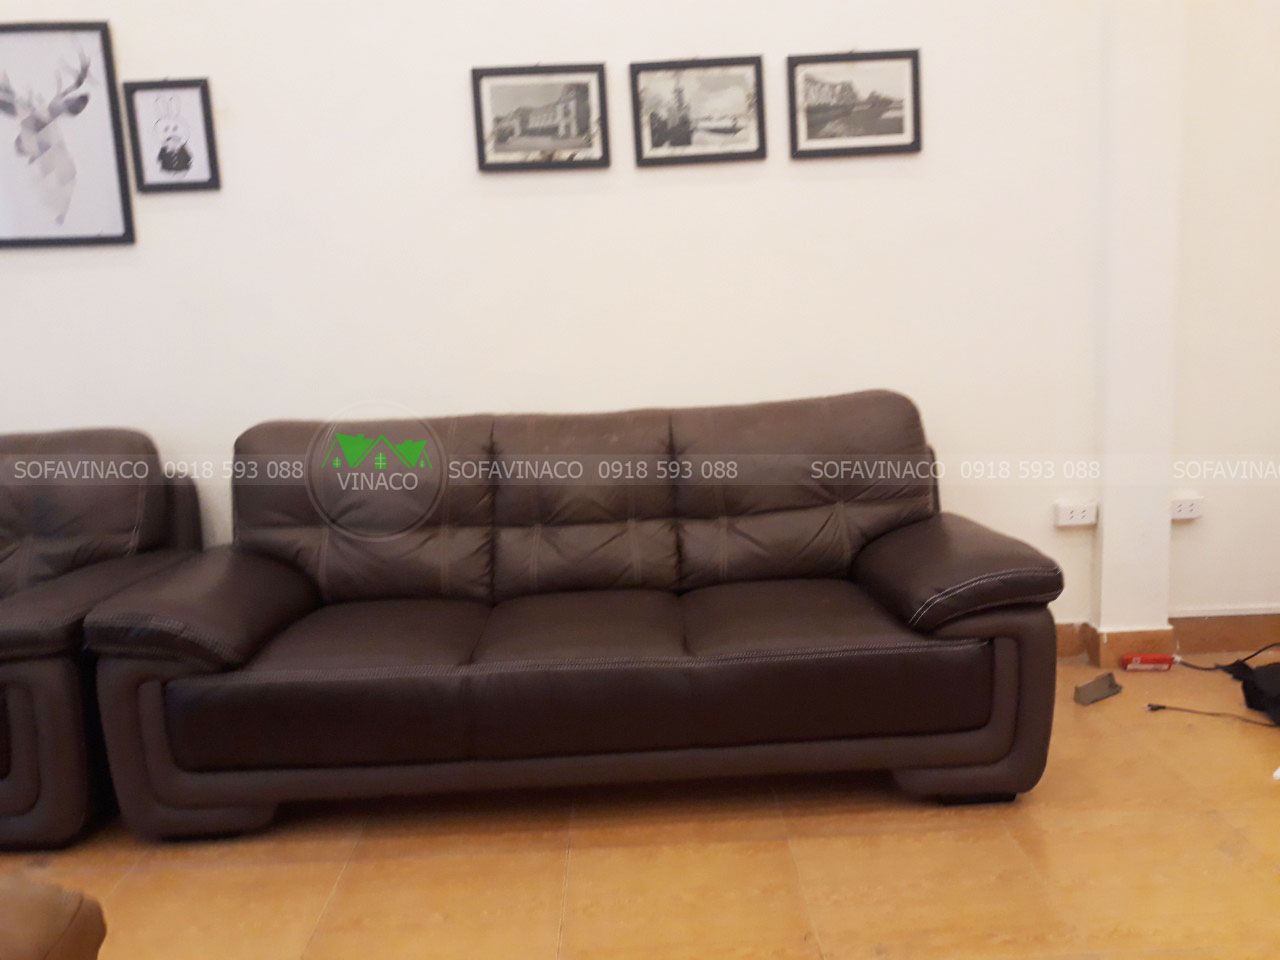 Bọc ghế sofa của VINACO có những ưu điểm gì?